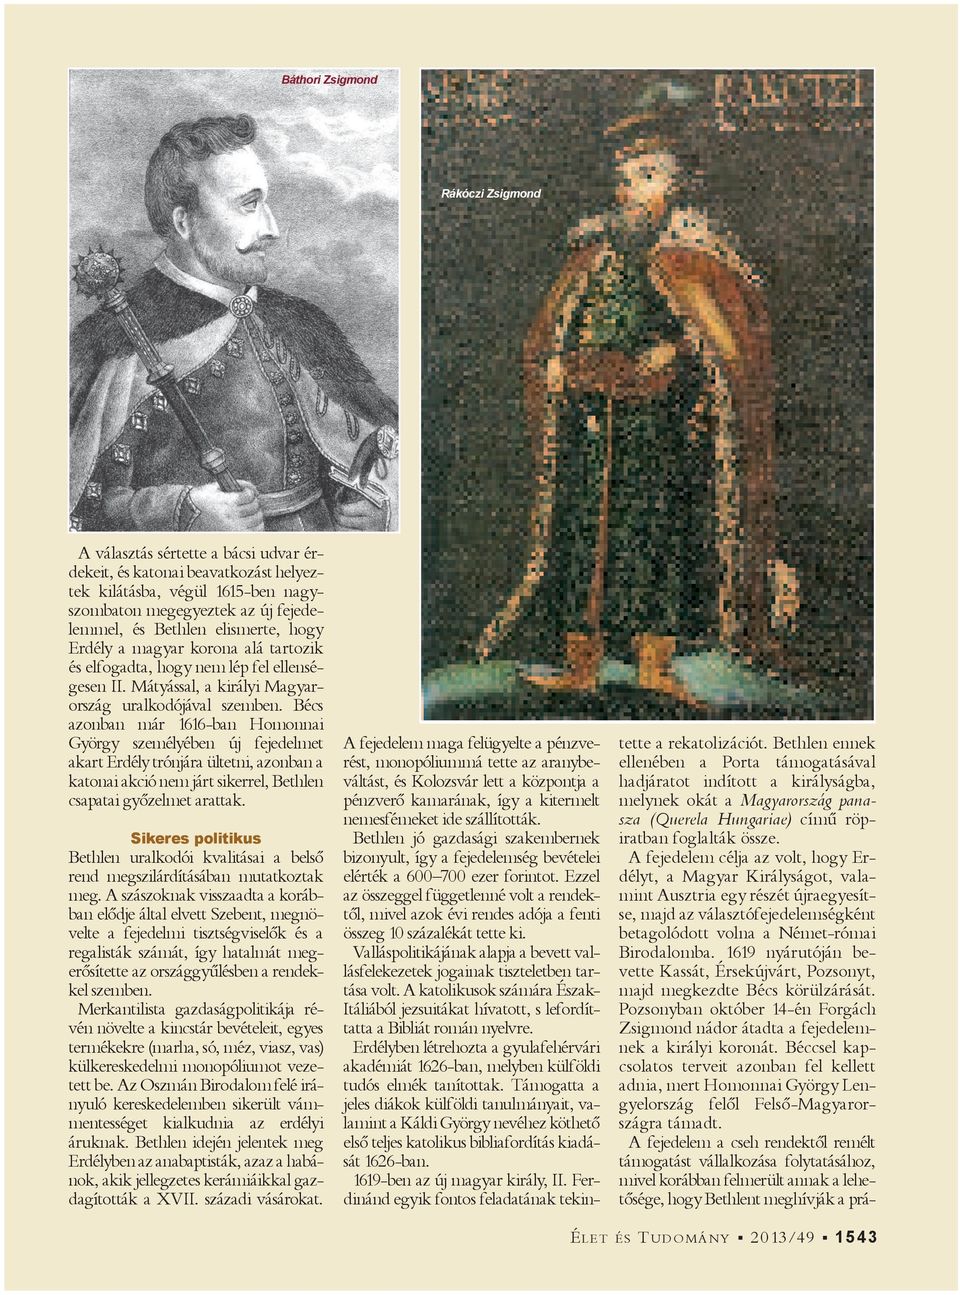 Bécs azonban már 1616-ban Homonnai György személyében új fejedelmet akart Erdély trónjára ültetni, azonban a katonai akció nem járt sikerrel, Bethlen csapatai győzelmet arattak.